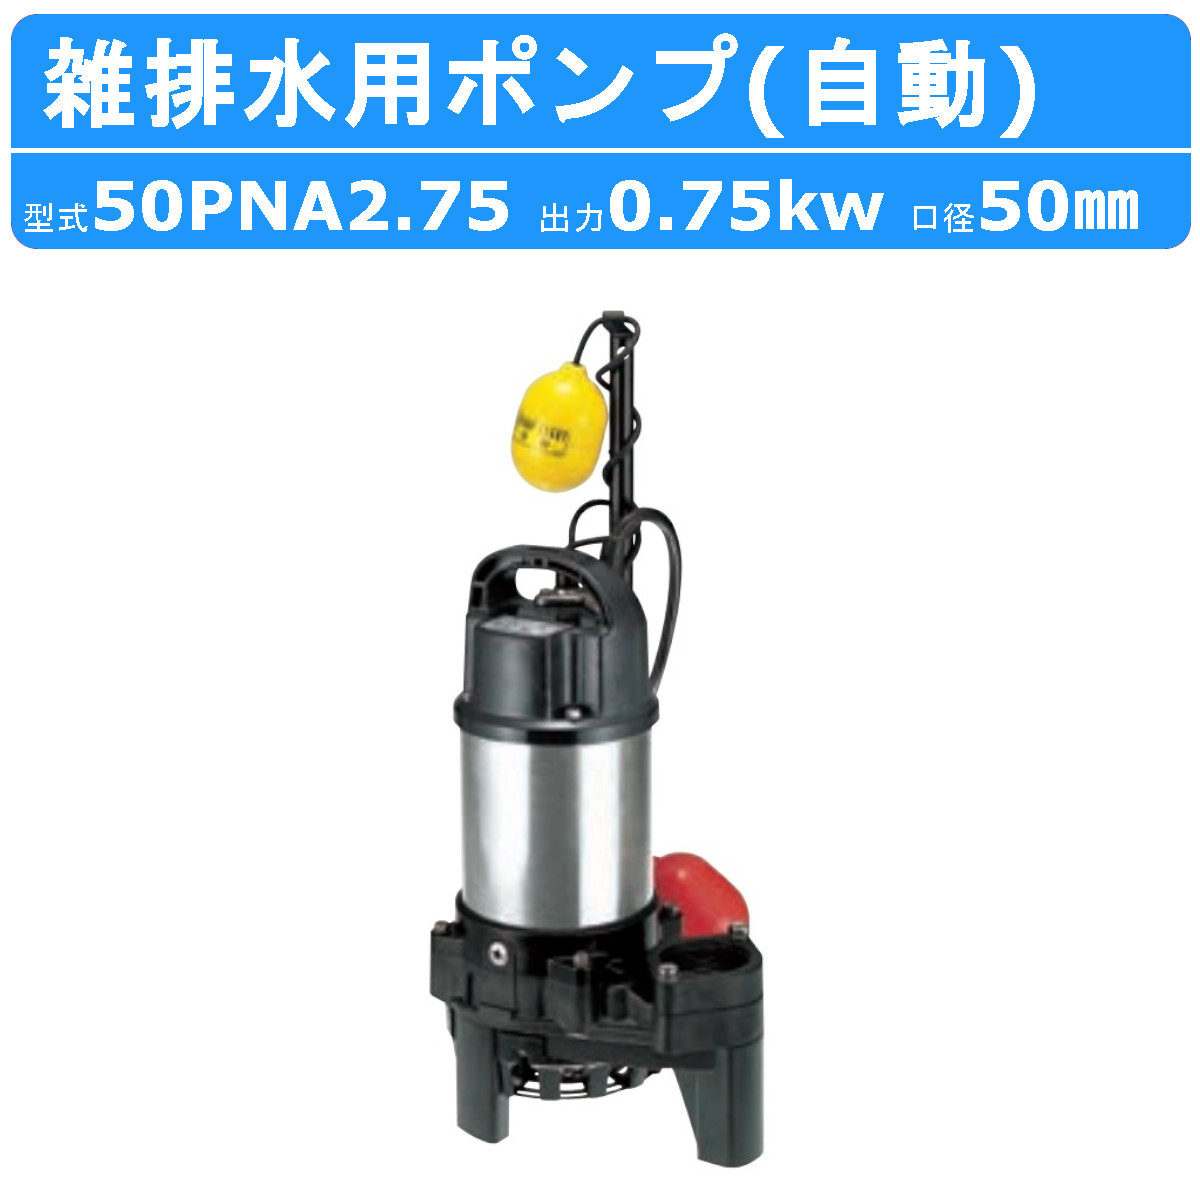 ツルミ 雑排水用 水中ポンプ 50PNA2.75 三相200V 自動型 バンクス